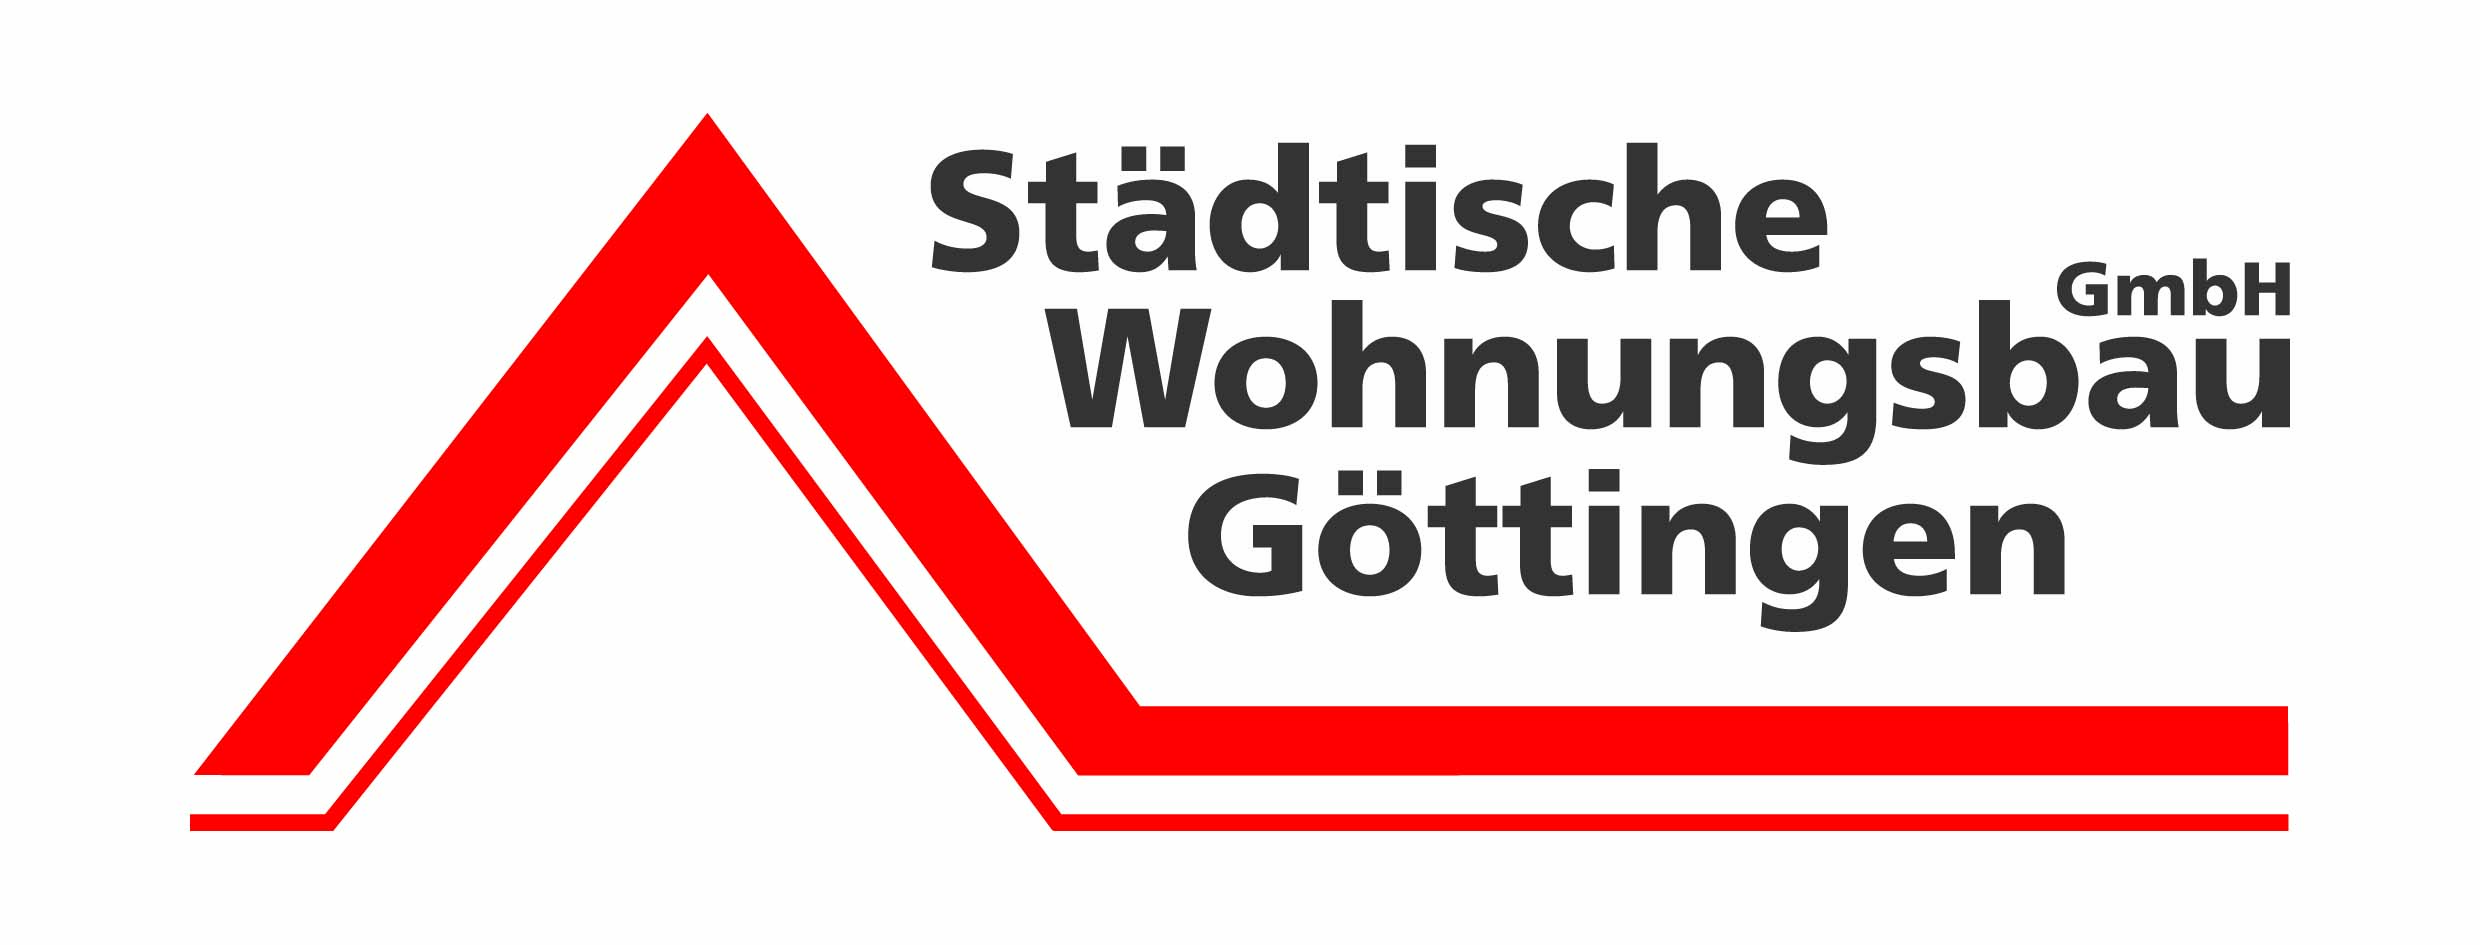 Städtische Wohnungsbau Göttingen